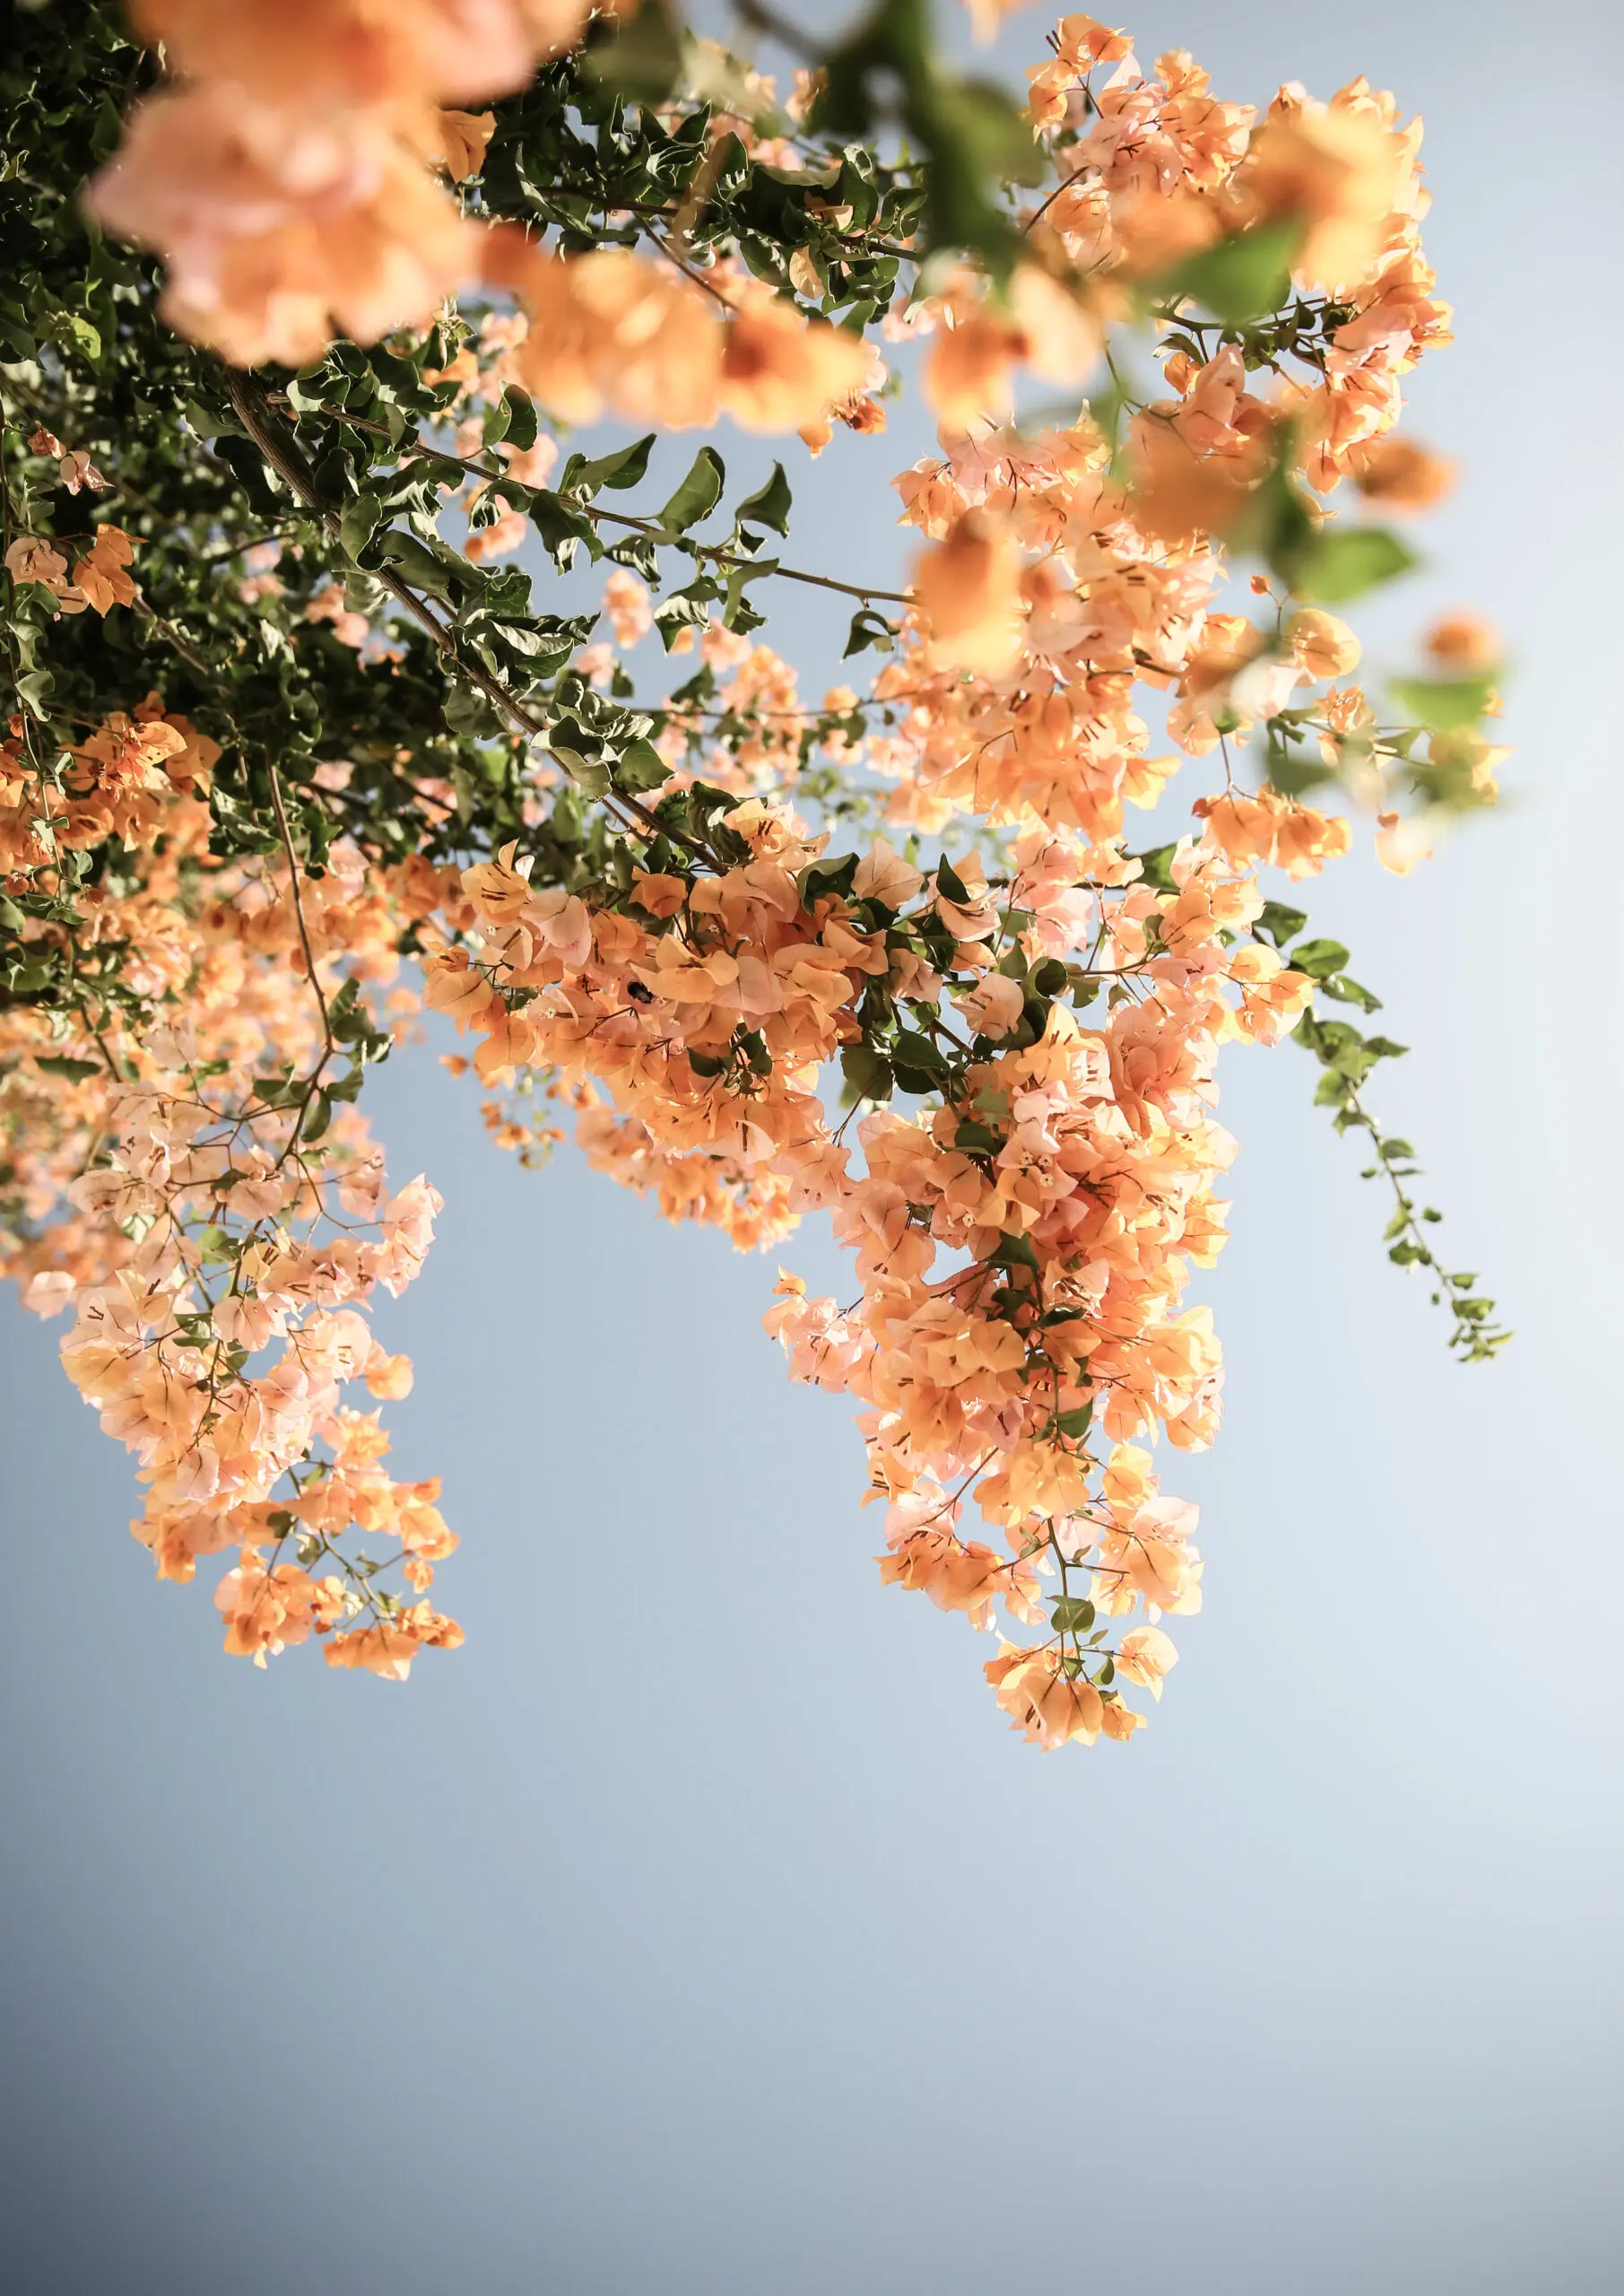 Wandbild (25504) Assos Blooms by Shot by Clint präsentiert: Natur